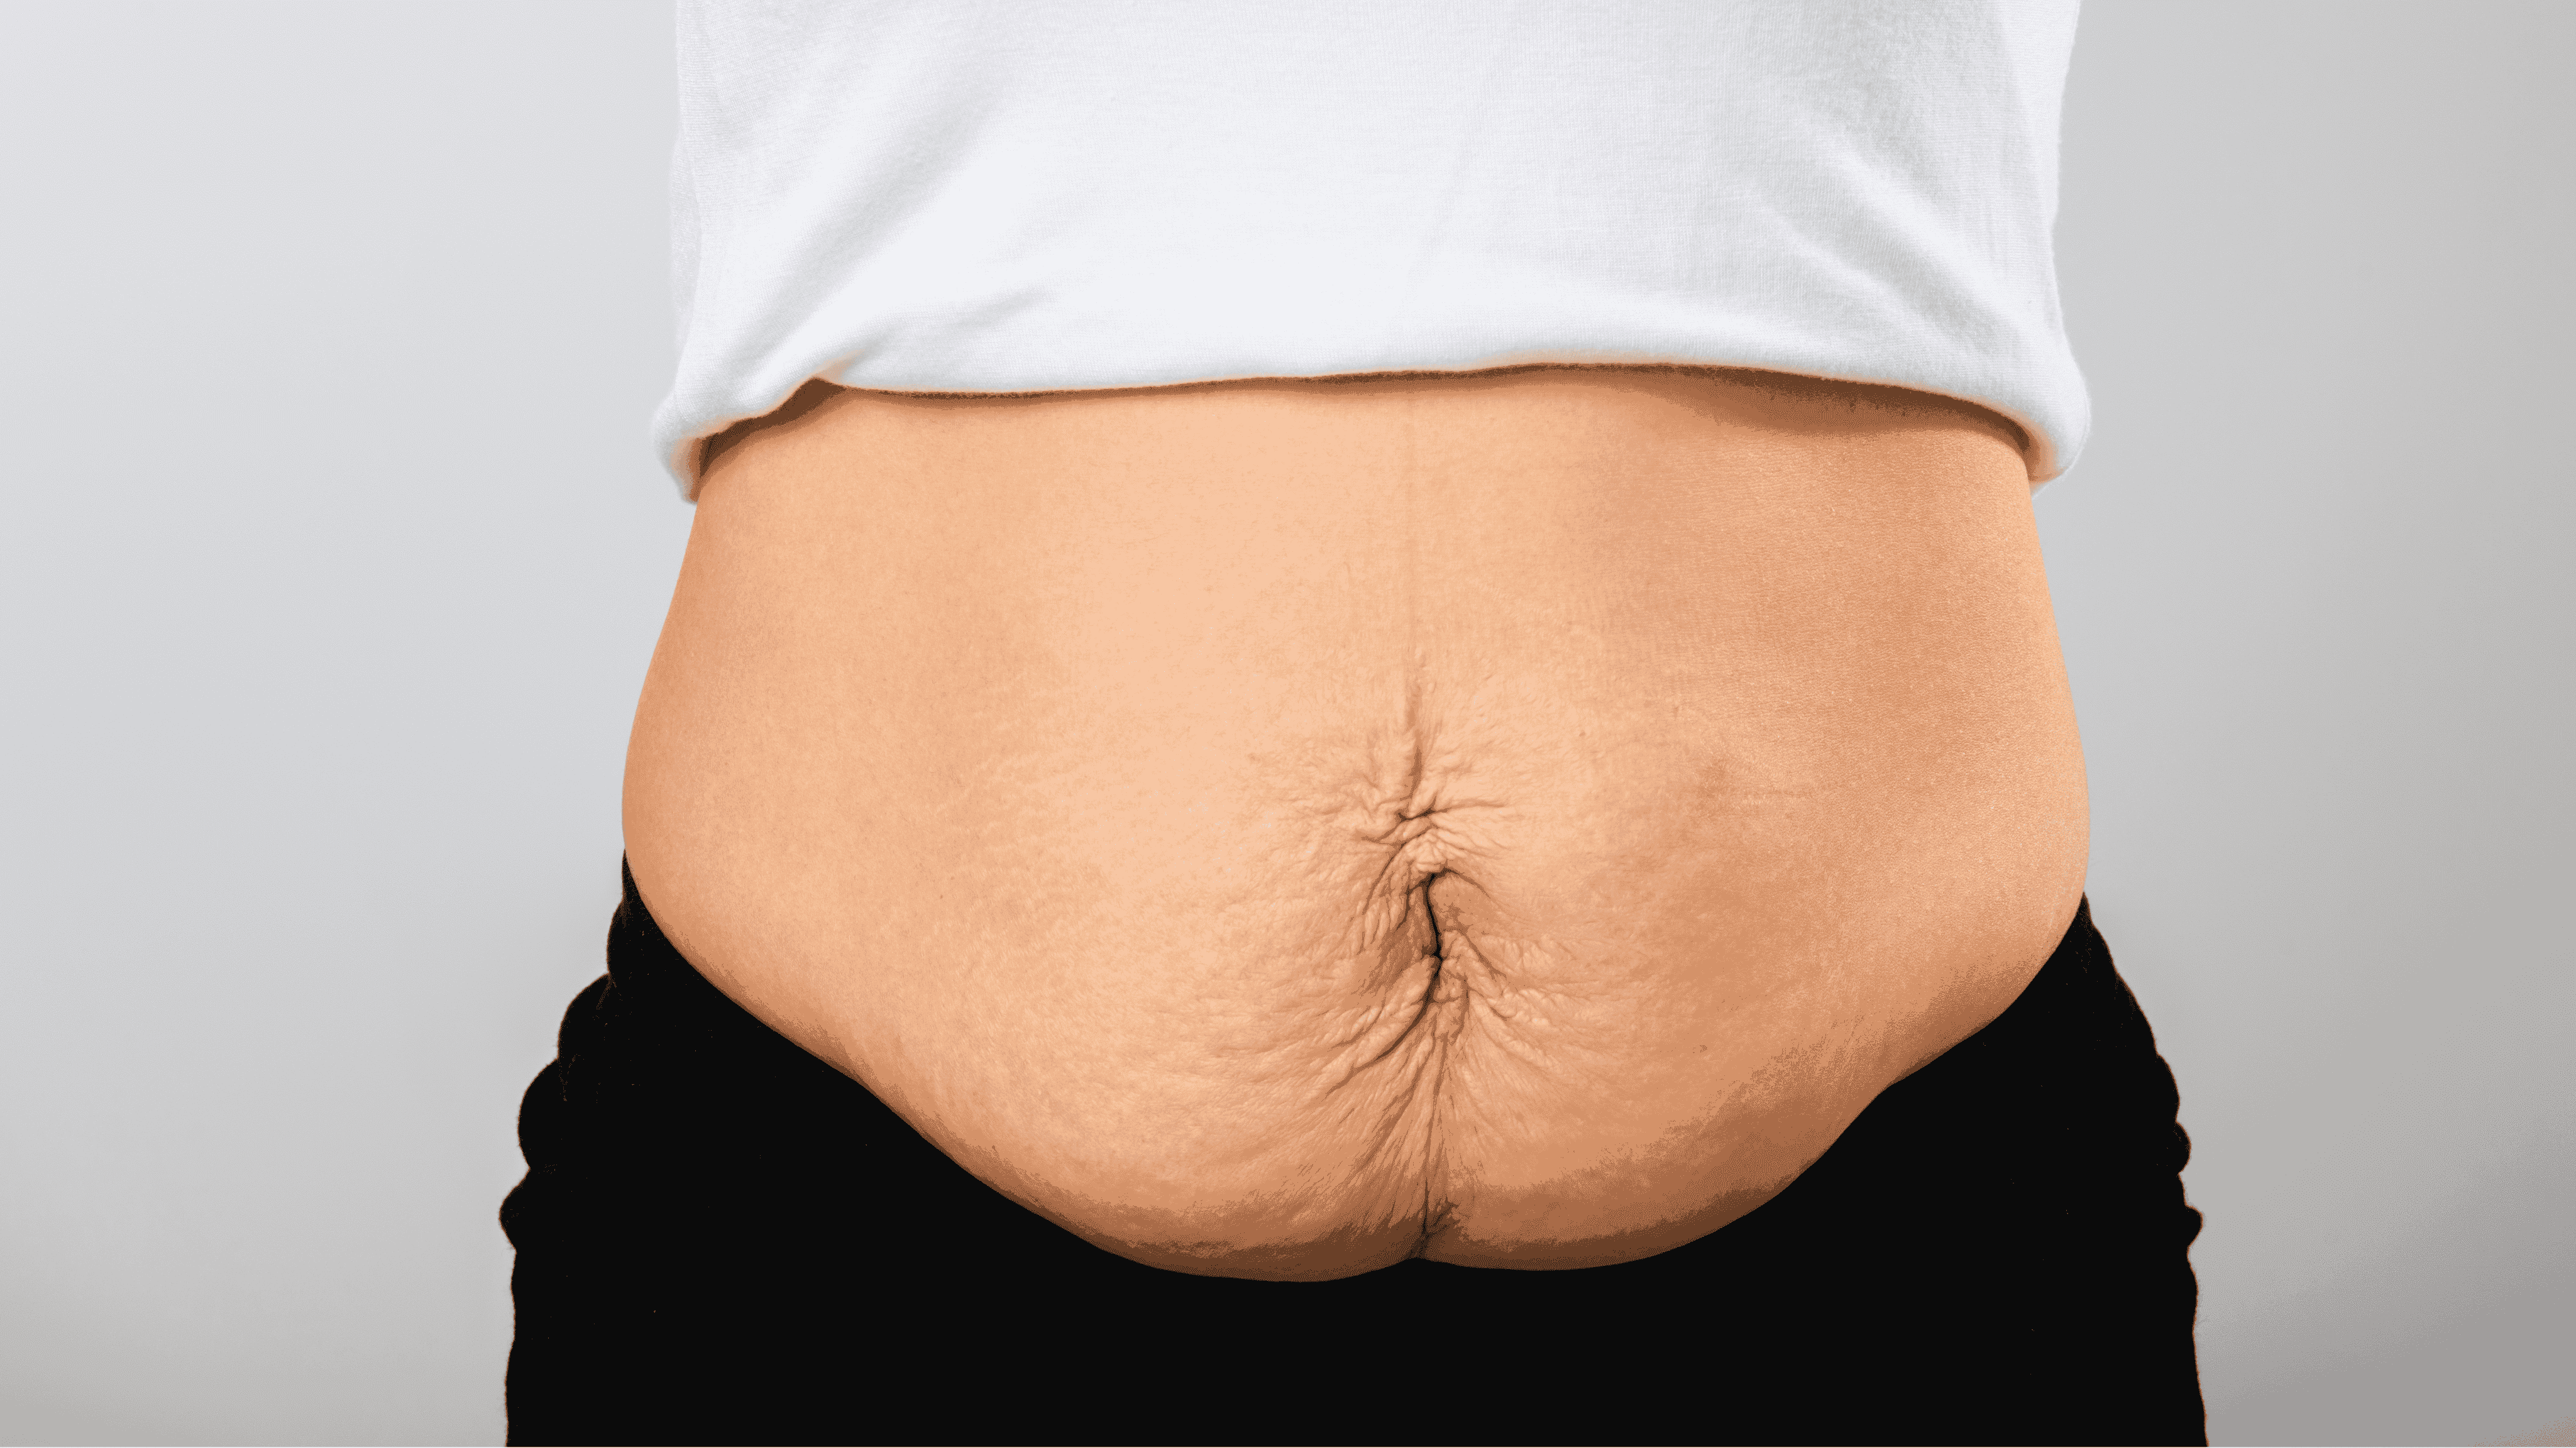 Cirugía después de la pérdida de peso: opciones y consideraciones